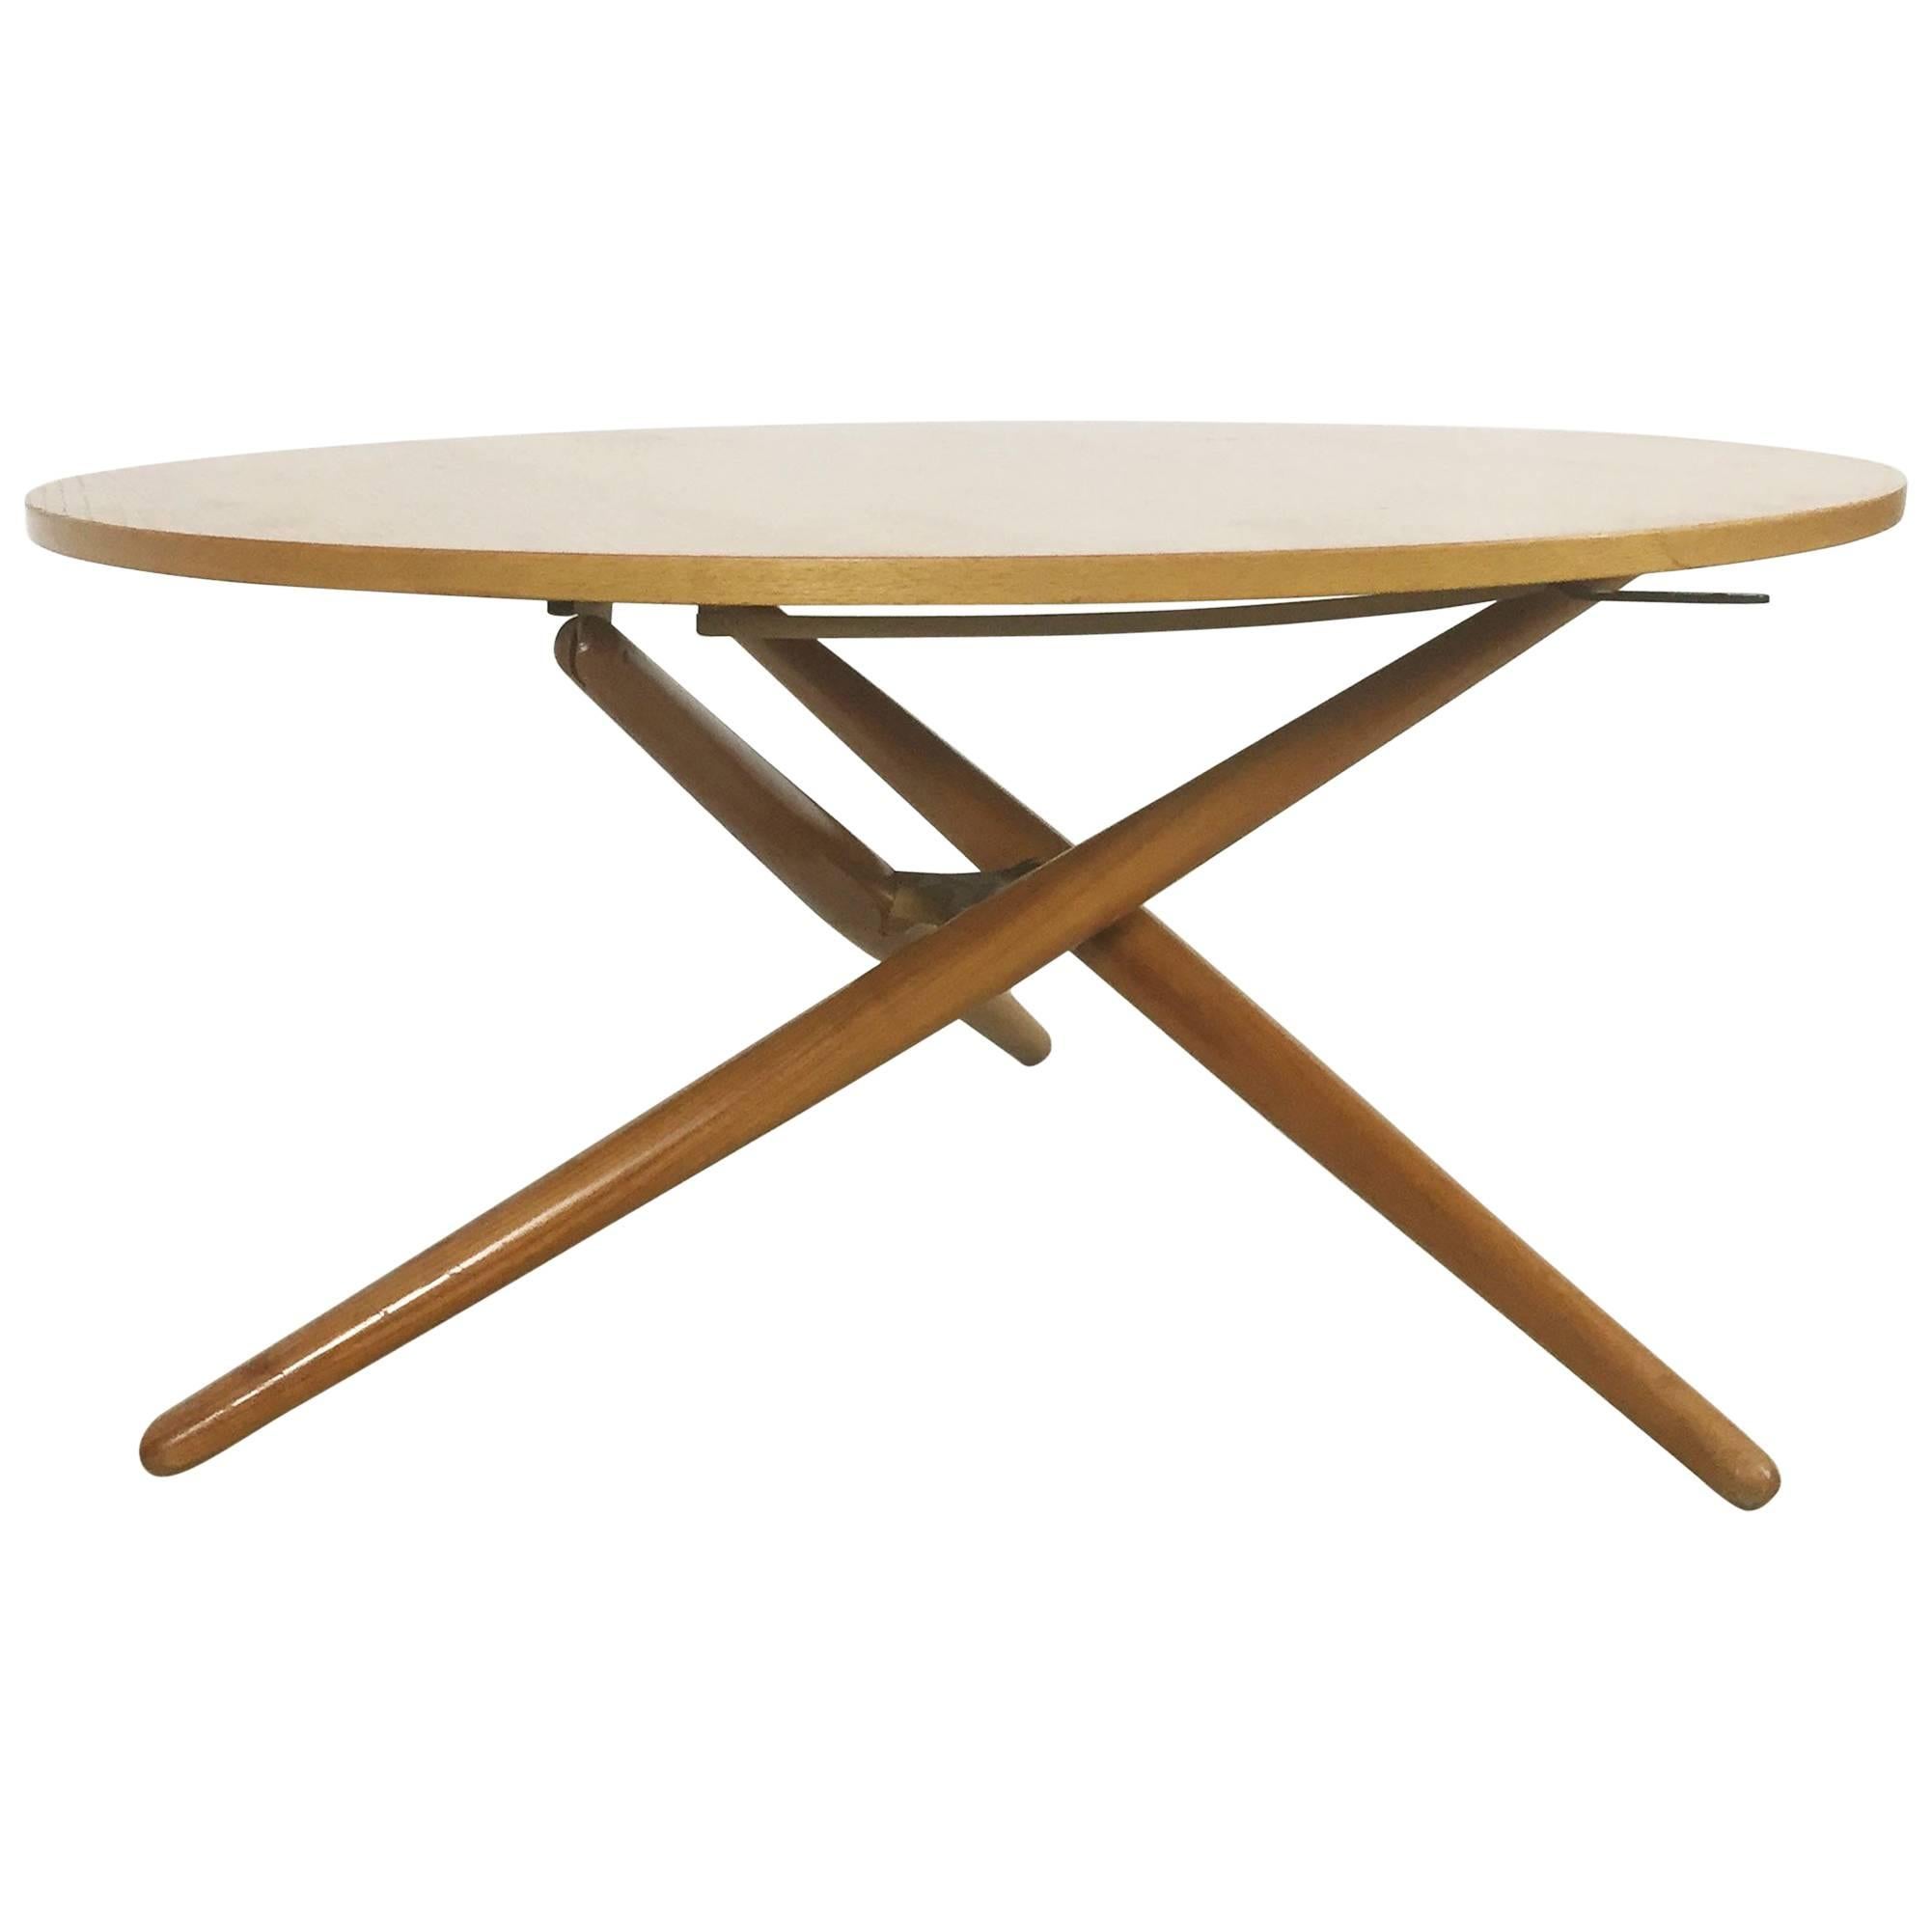 Movex Table, Ess.Tee.Tisch Cherrywood, Jürg Bally for Wohnhilfe Zürich, 1951